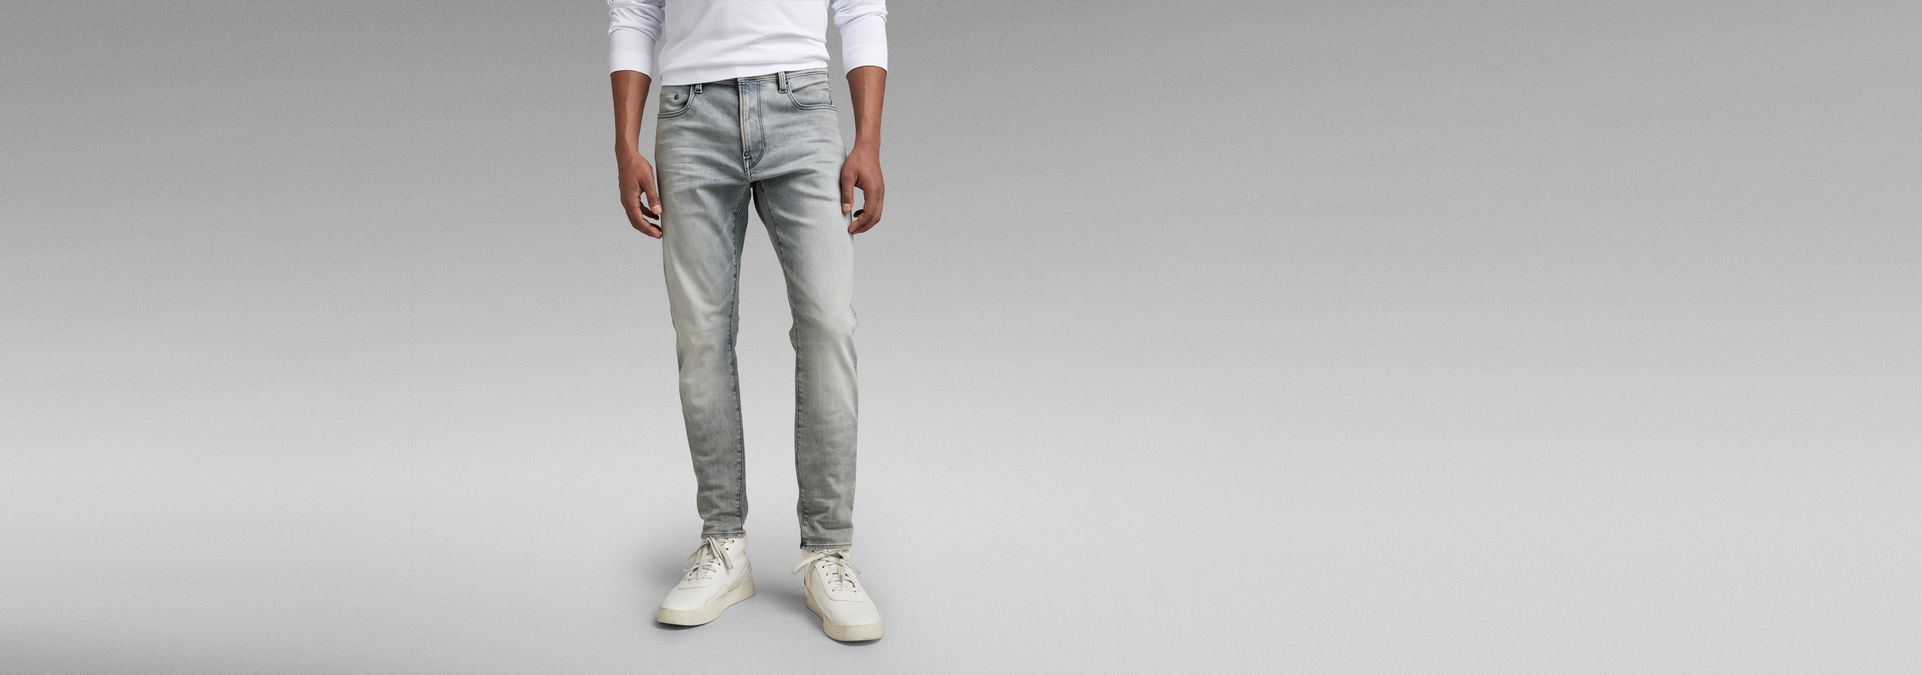 Revend FWD Skinny Jeans | Grey | G-Star RAW® US